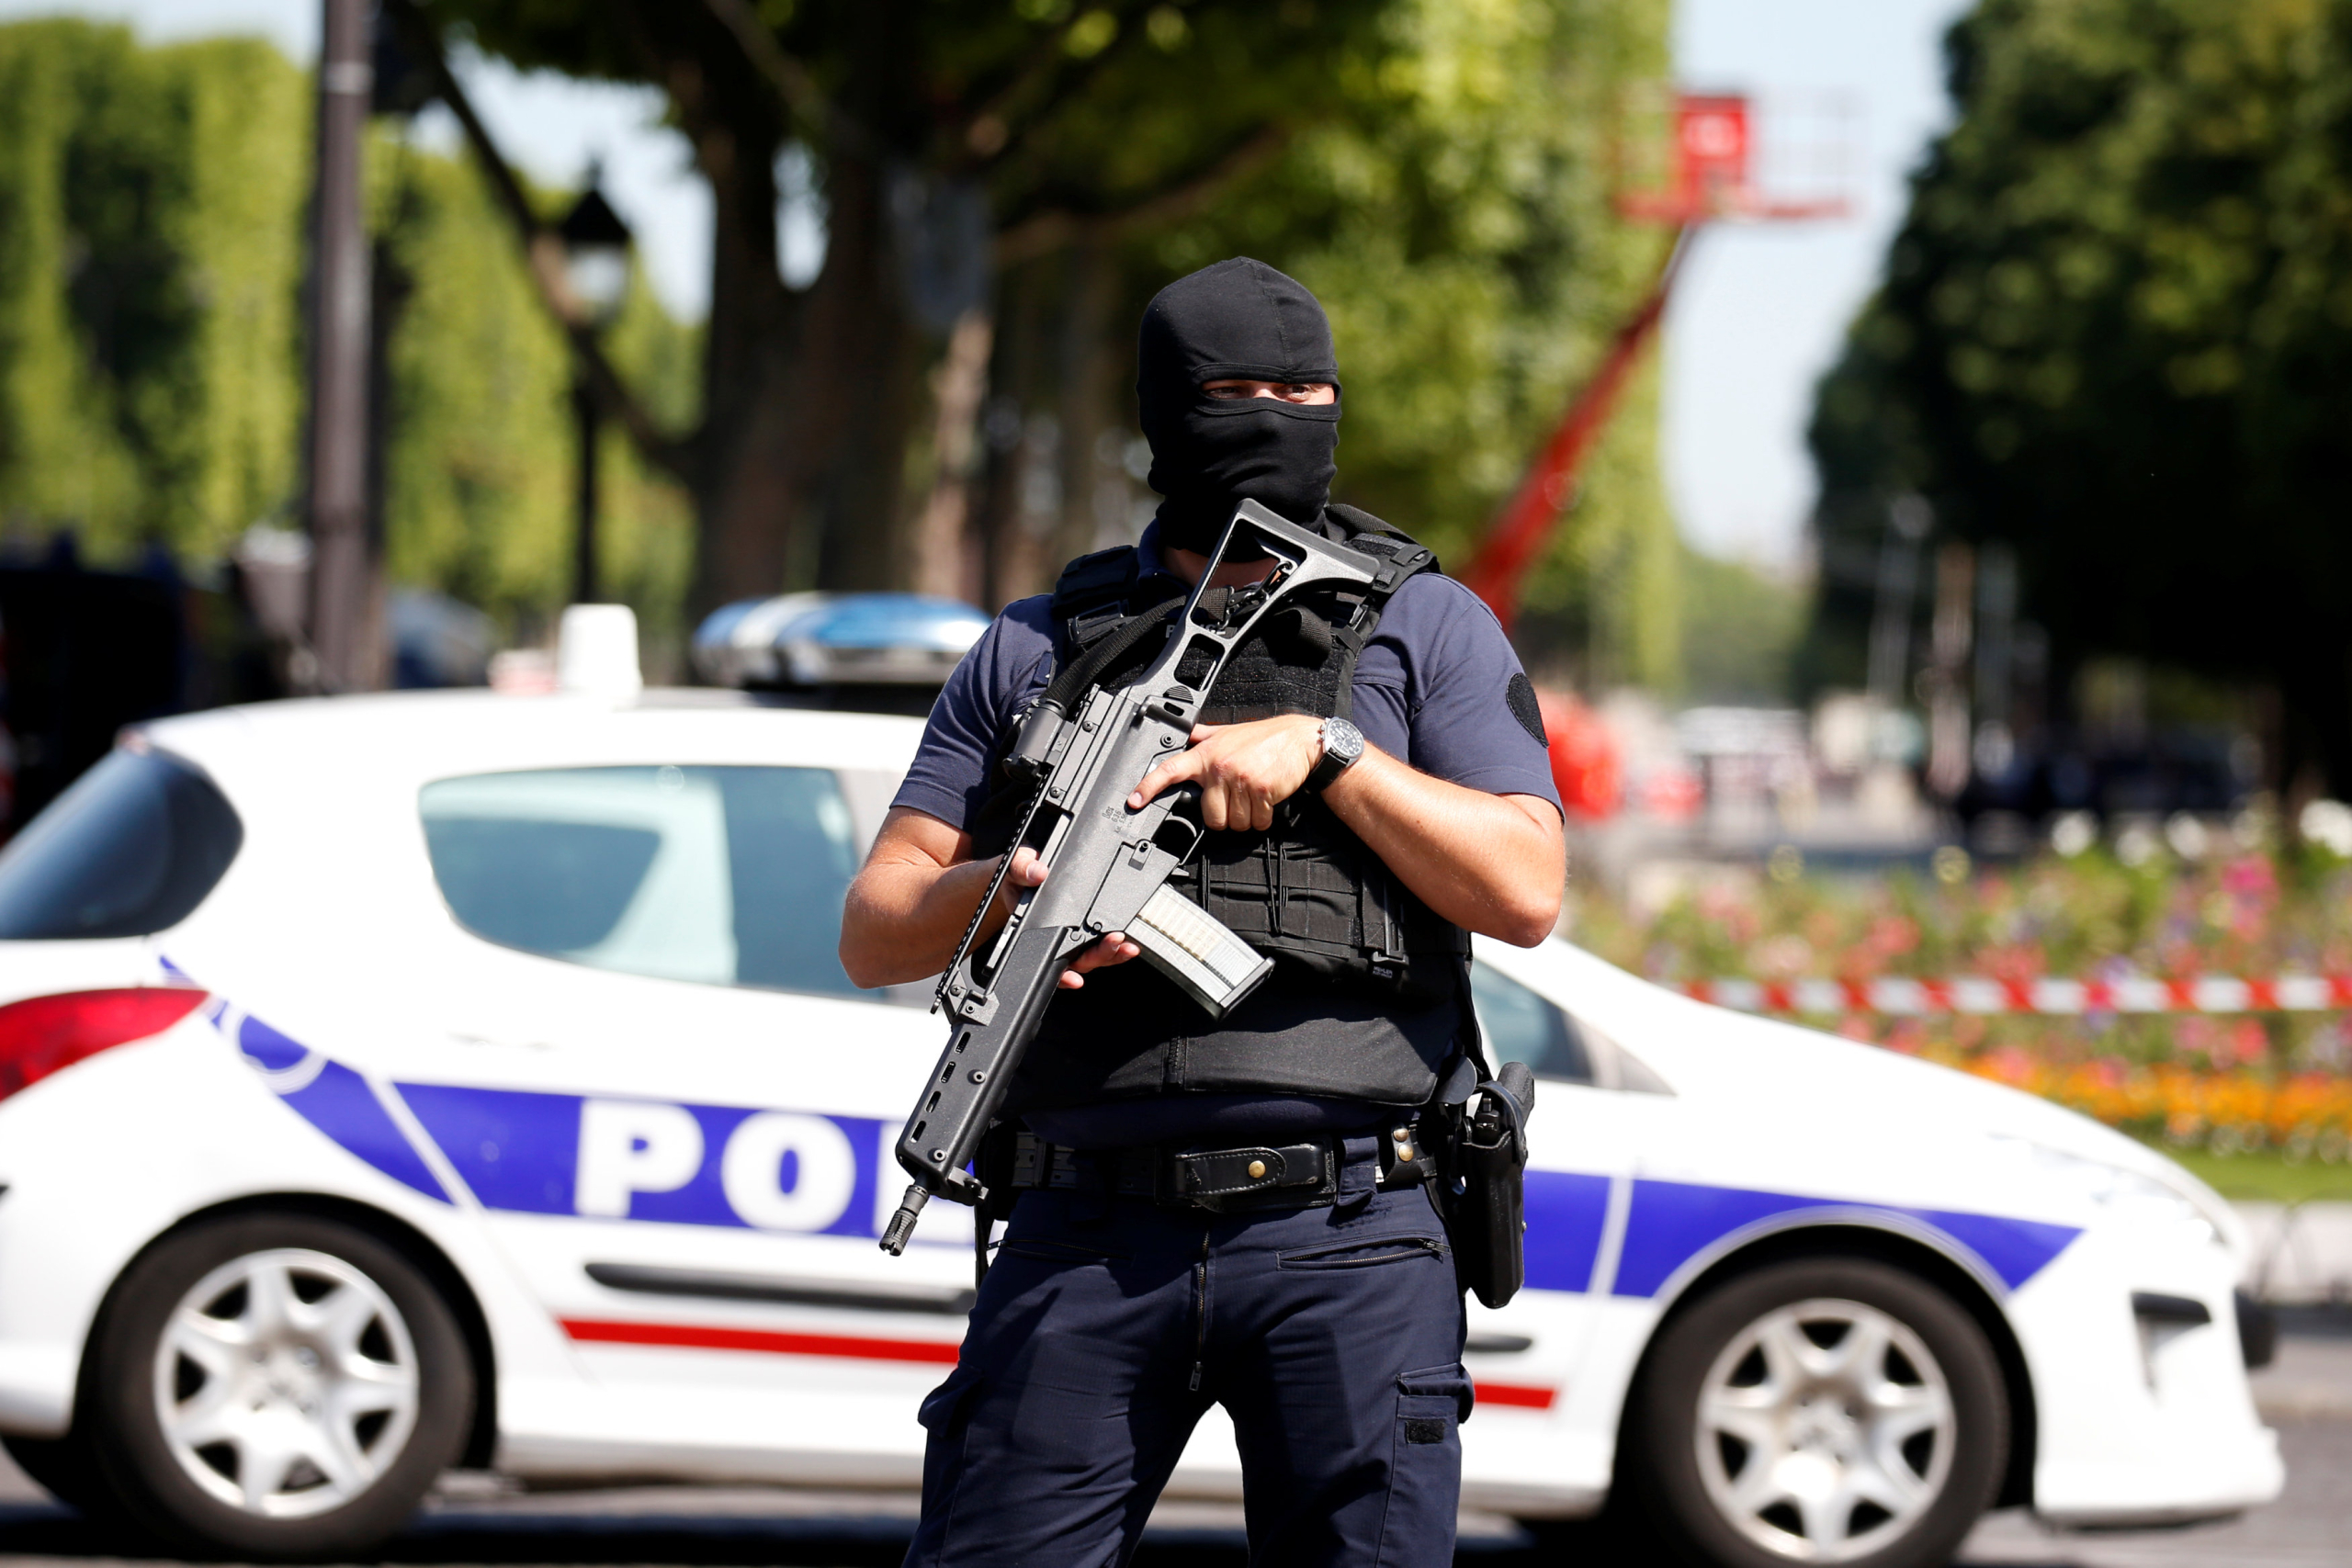 فرنسا.. رسائل الشرطة على مجموعات “واتساب” تثير القلق